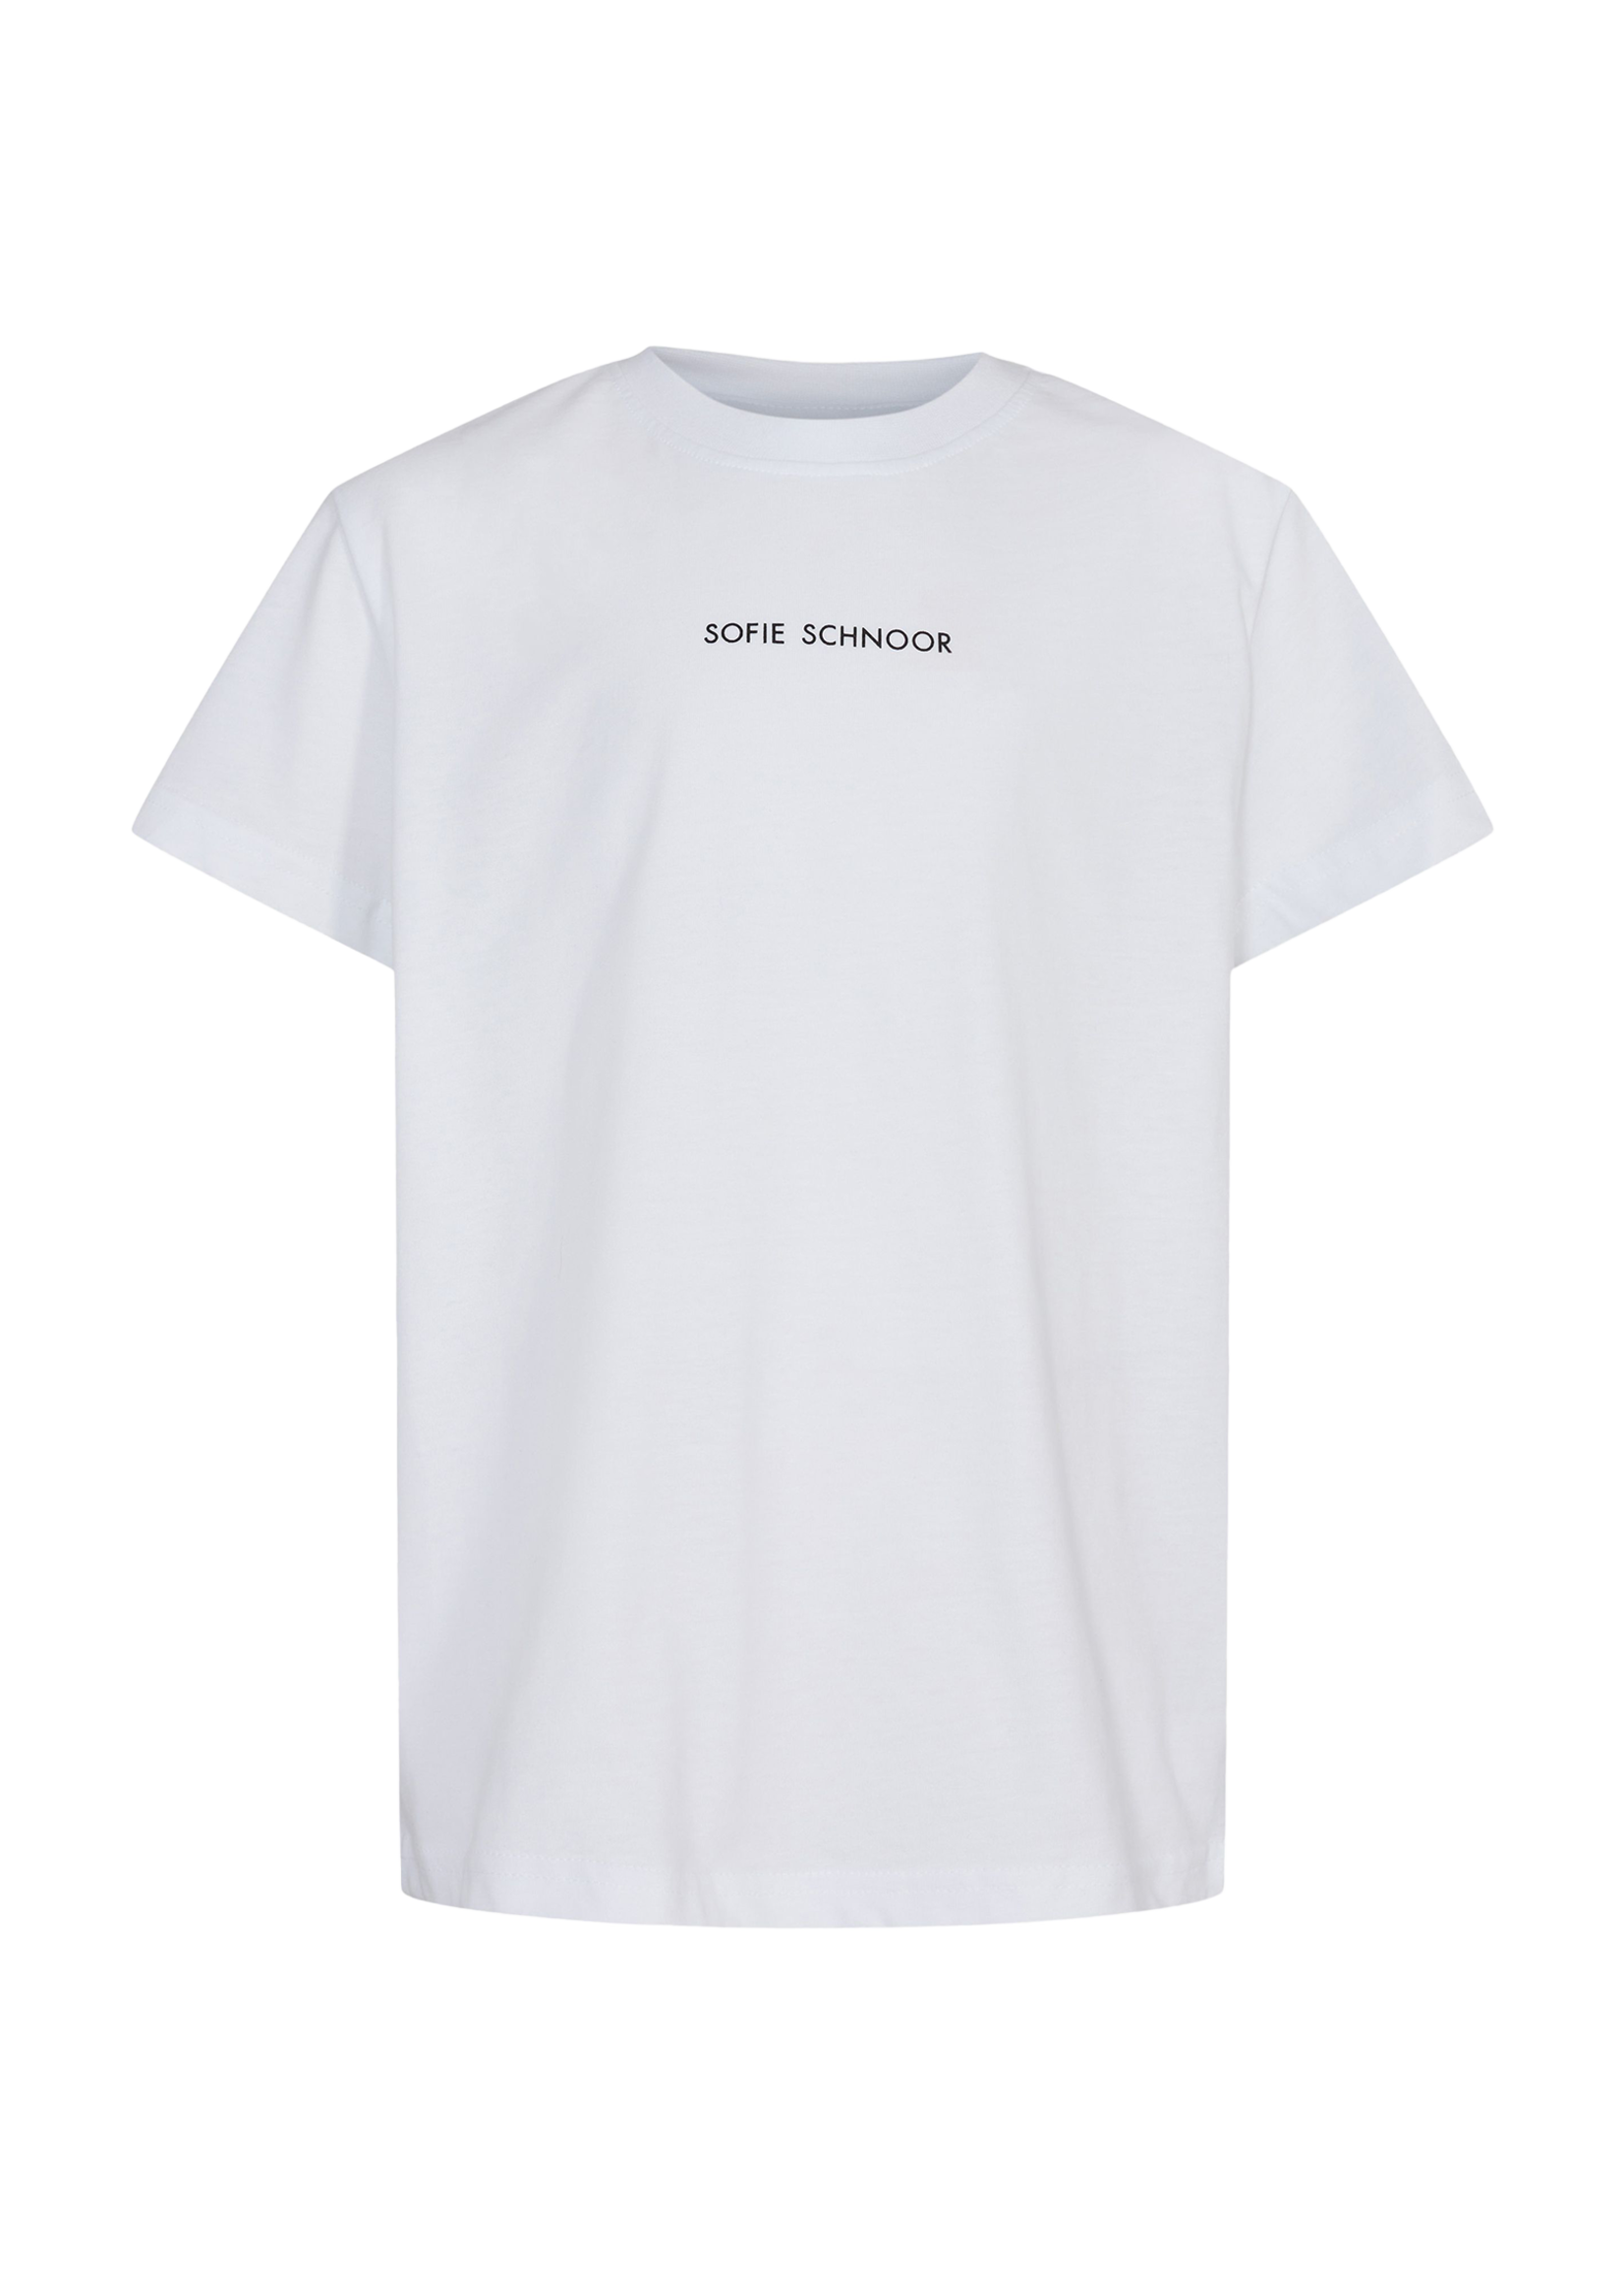 Sofie Schnoor T-shirt NOS White